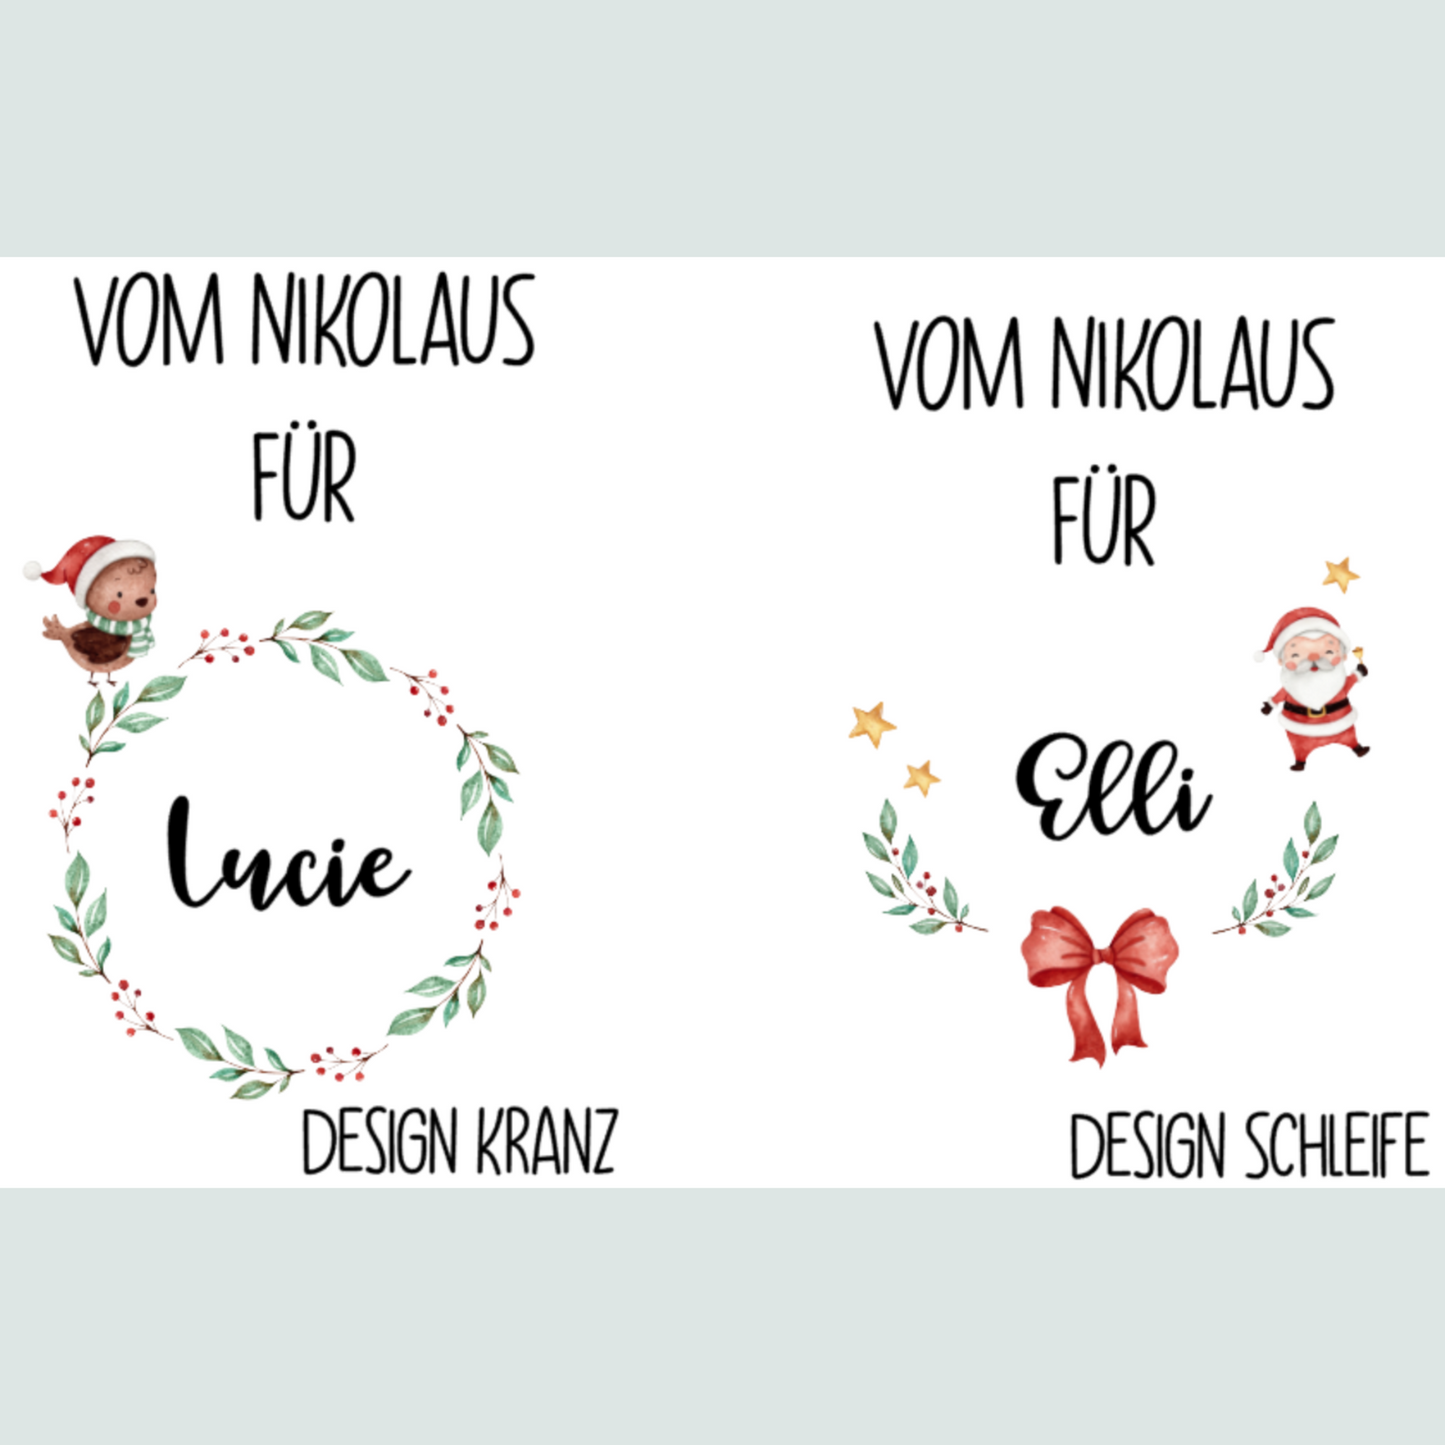 Personalisierter Beutel für Nikolaus Weihnachten - ideal als kleine Geschenkverpackung, für Süßigkeiten oder Geld - zwei Designs - rot